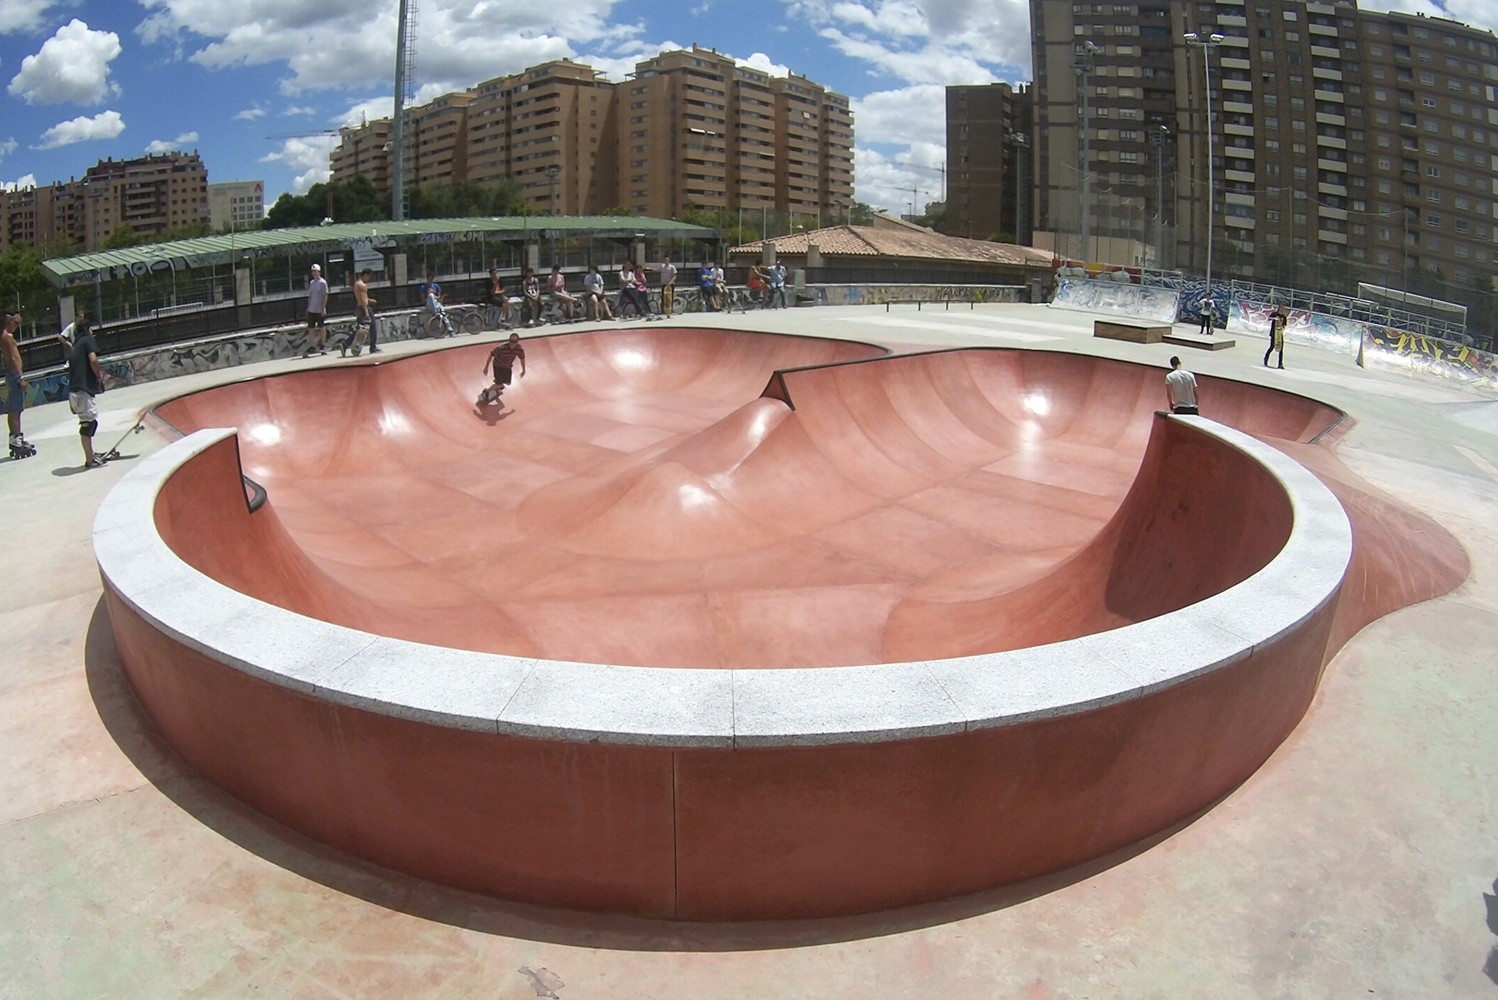 Via Hispanidad skatepark